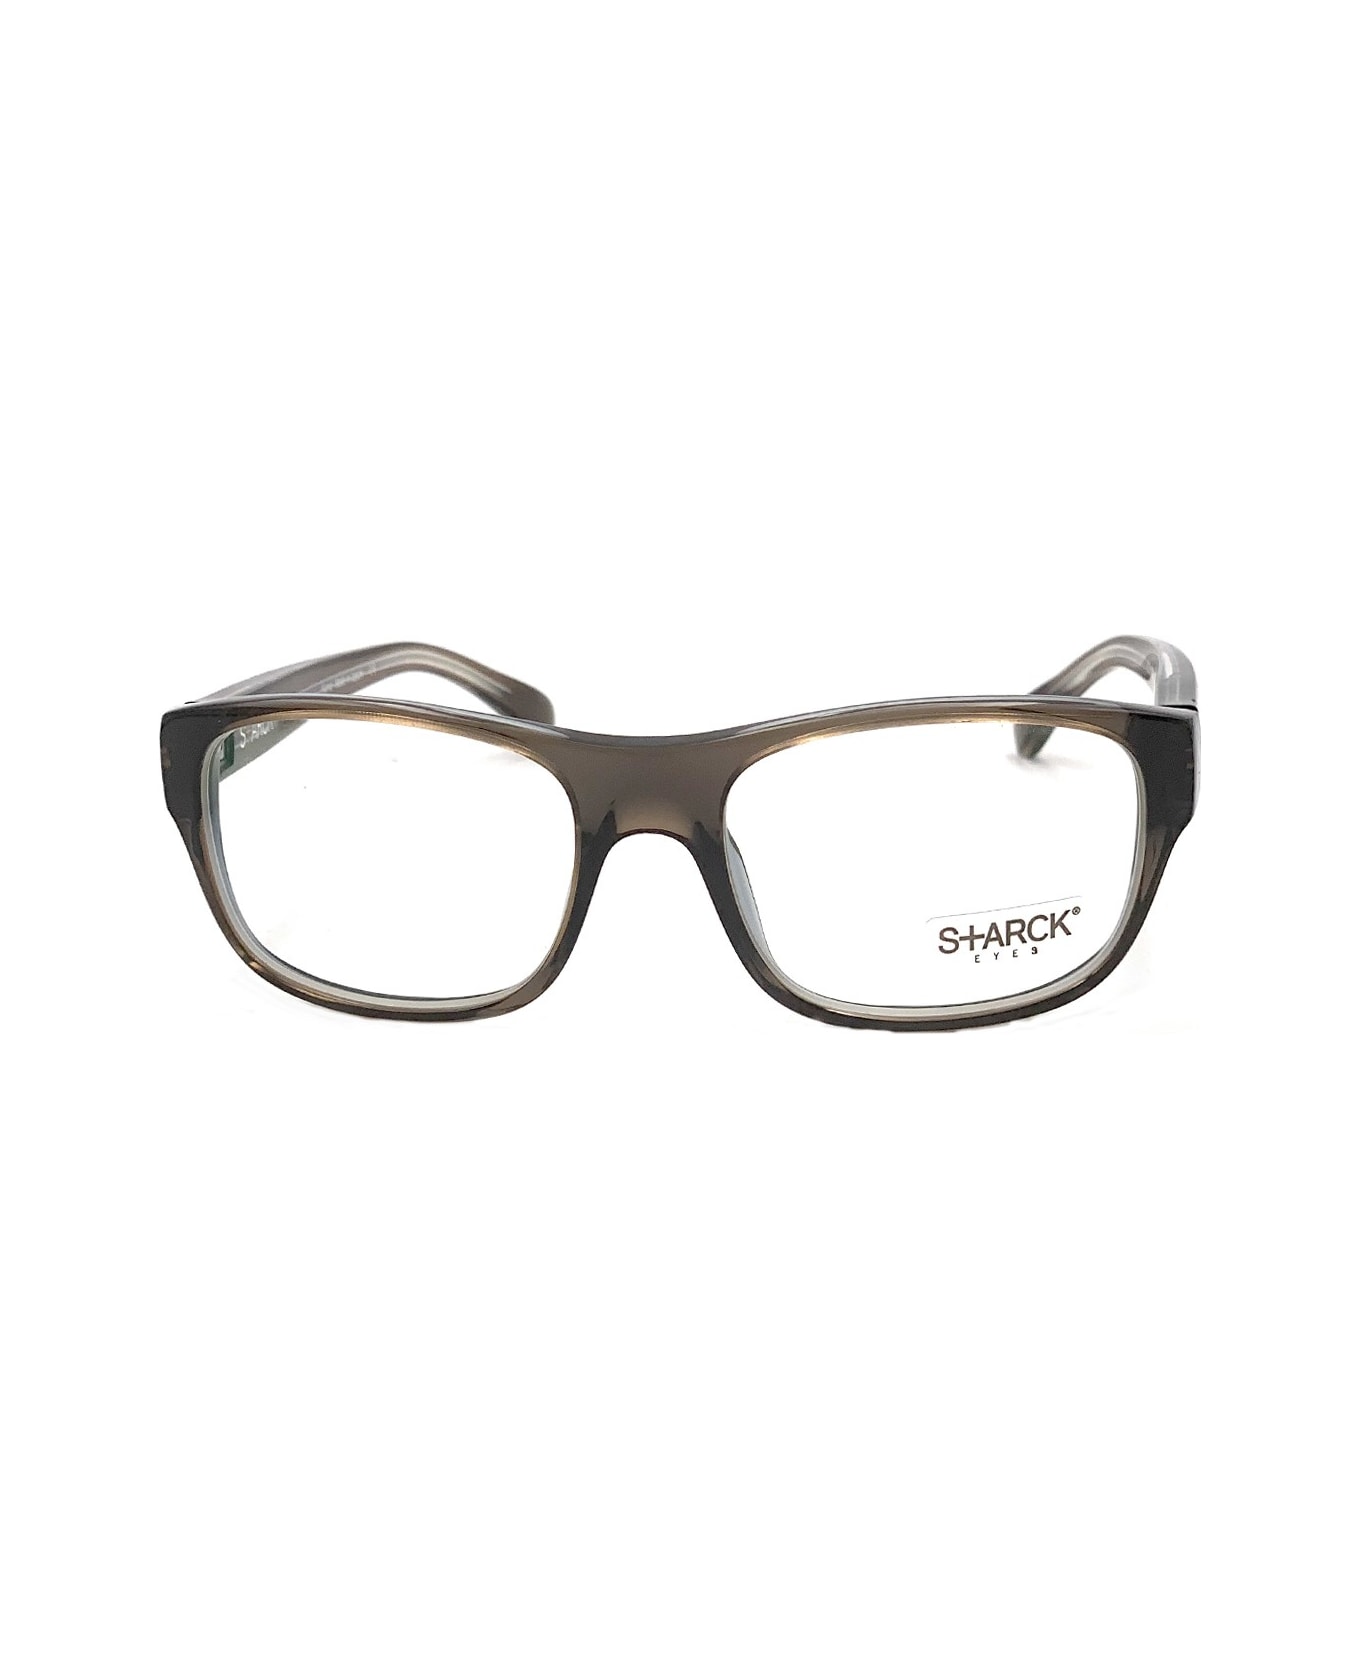 Philippe Starck Pl 1001 Glasses - Grigio